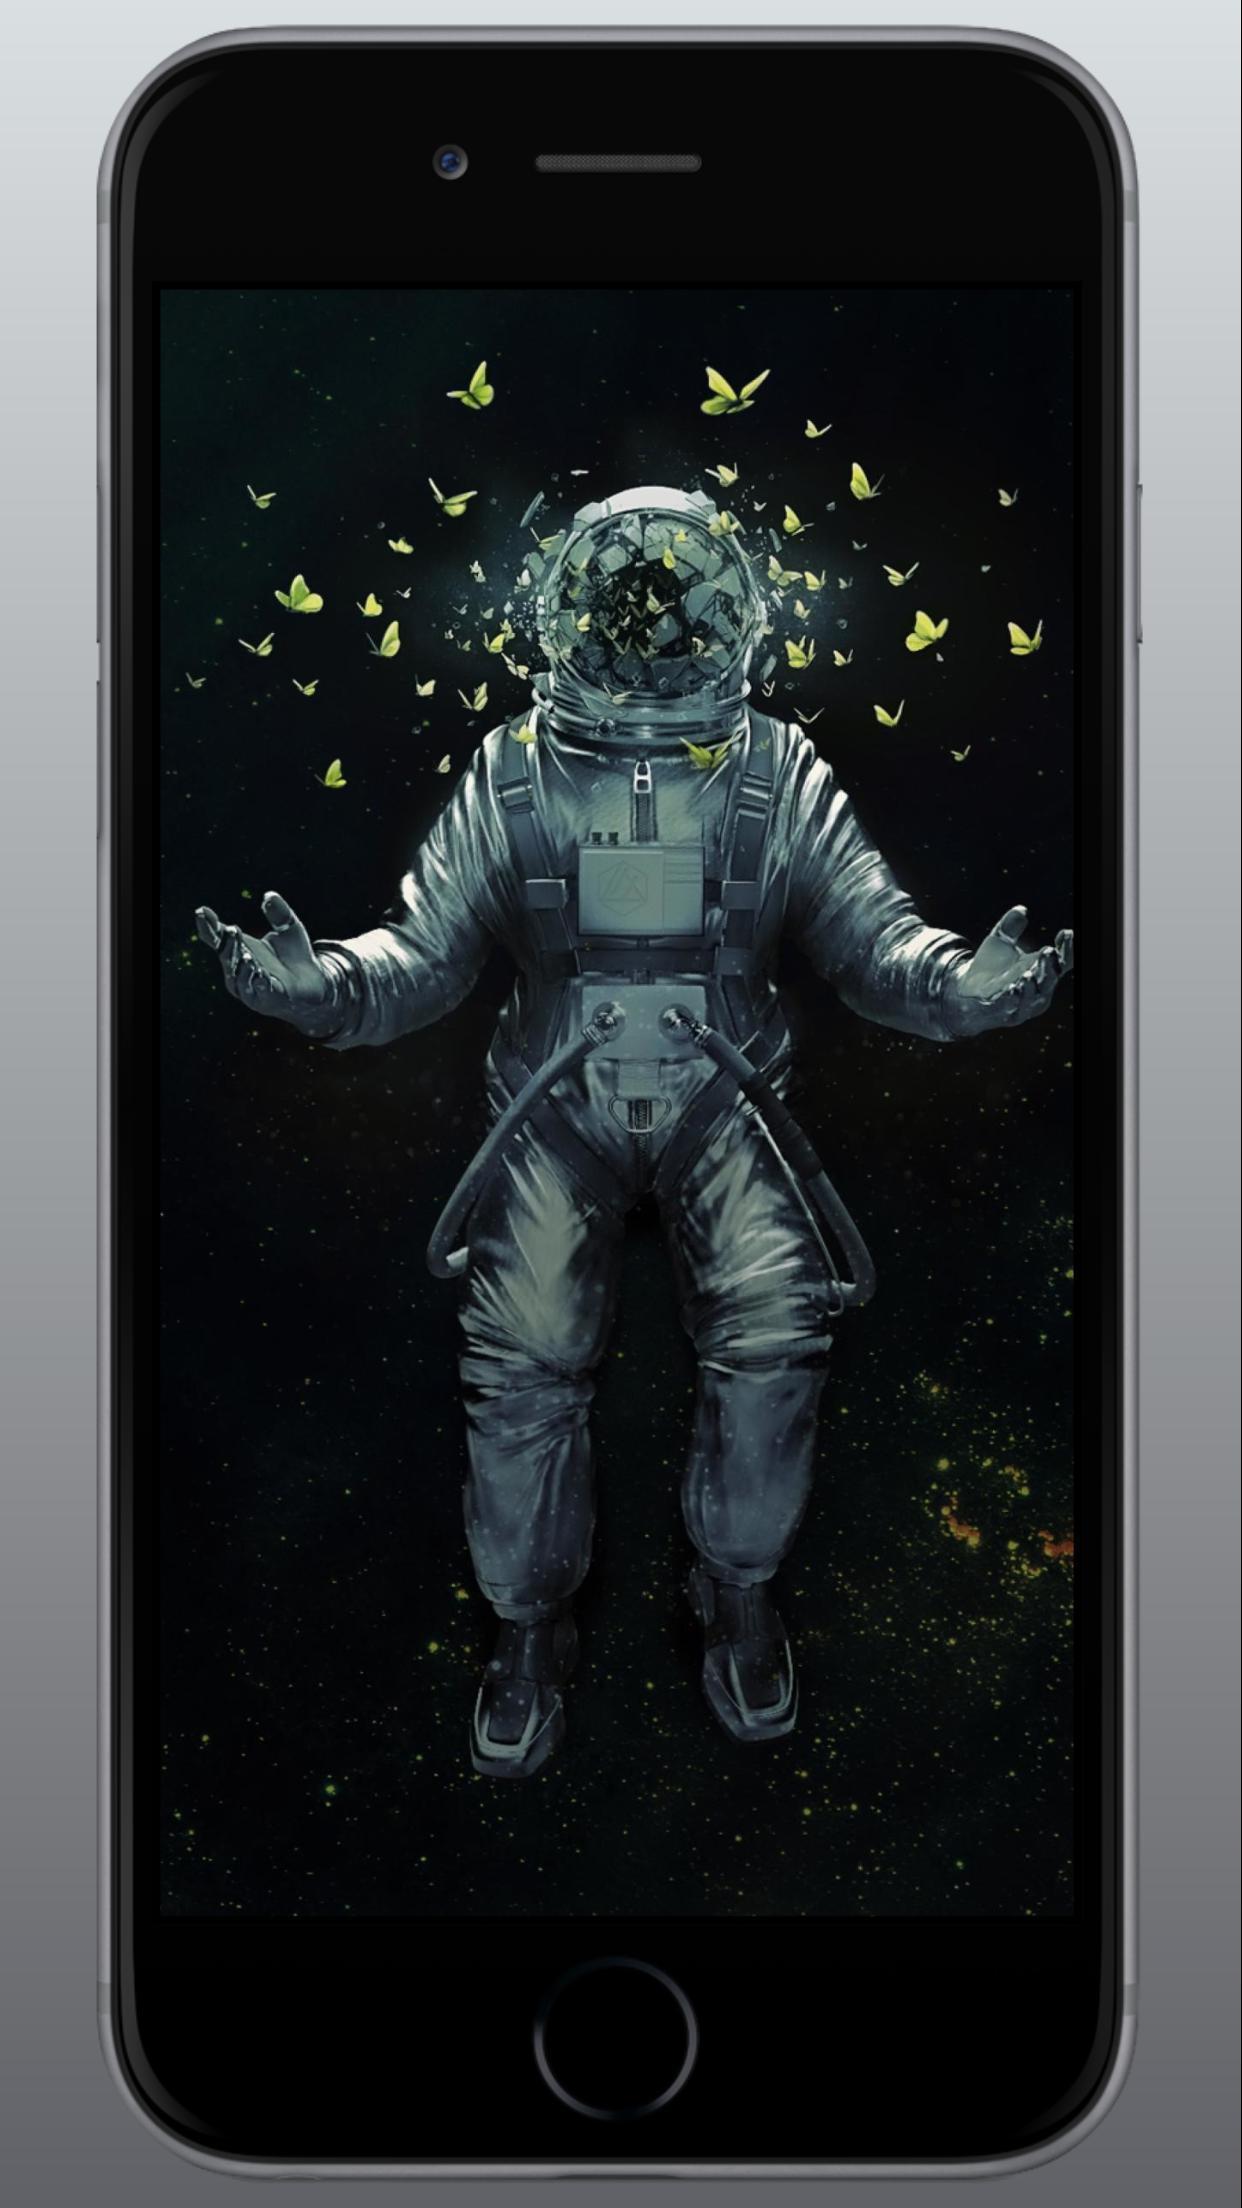 Astronaut Wallpaper 3d 4k For Android Apk Download O video 4k astronauta na sala cheia de computadores usando tela sensivel ao toque pode ser usado para fins pessoais e comerciais de acordo com as condicoes da licenca adquirida sem royalties. astronaut wallpaper 3d 4k for android